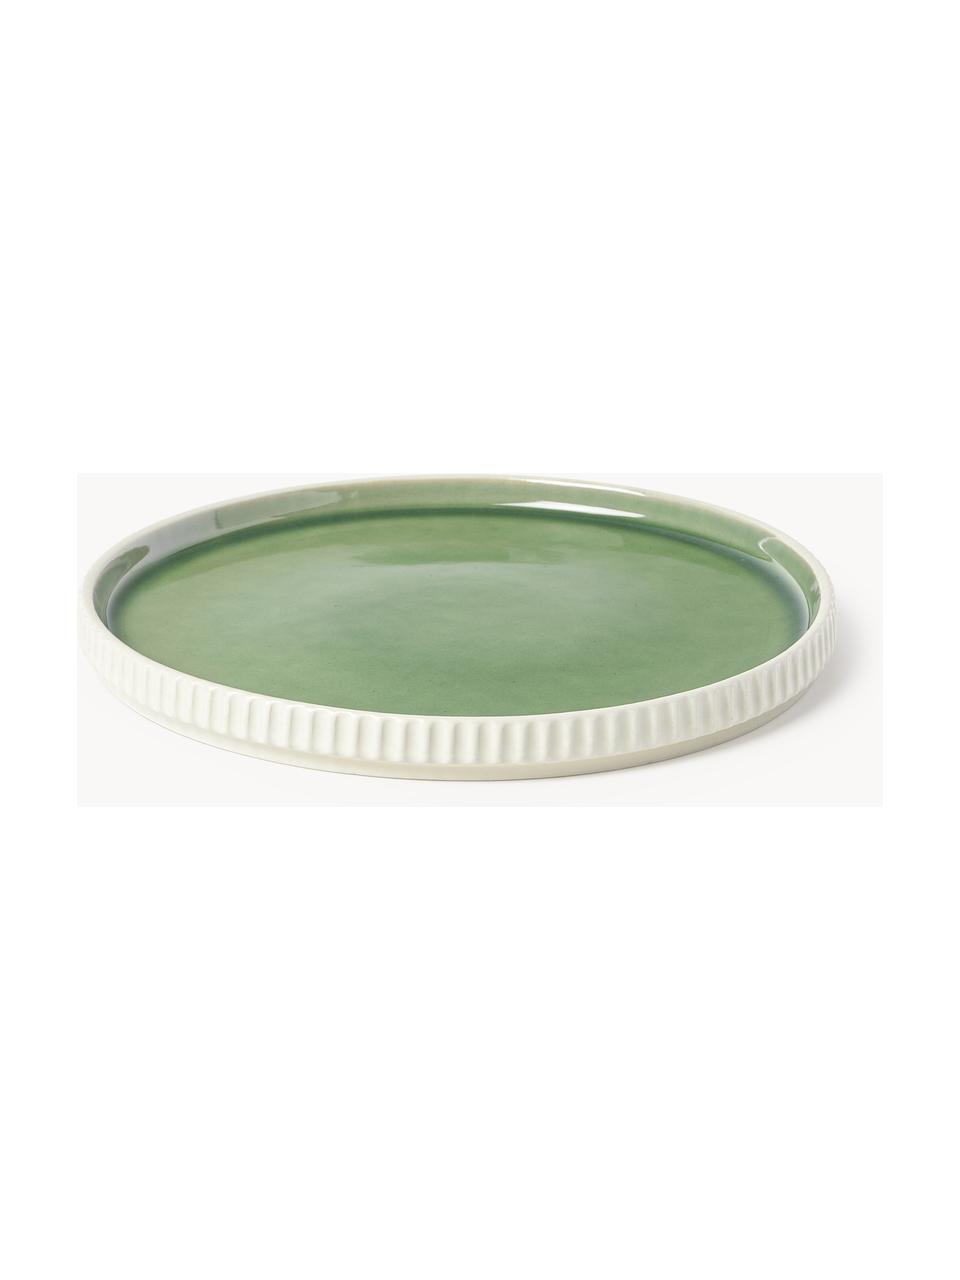 Piatti da colazione con struttura scanalata Bora 4 pz, Gres smaltato, Verde chiaro lucido, beige chiaro opaco, Ø 21 cm